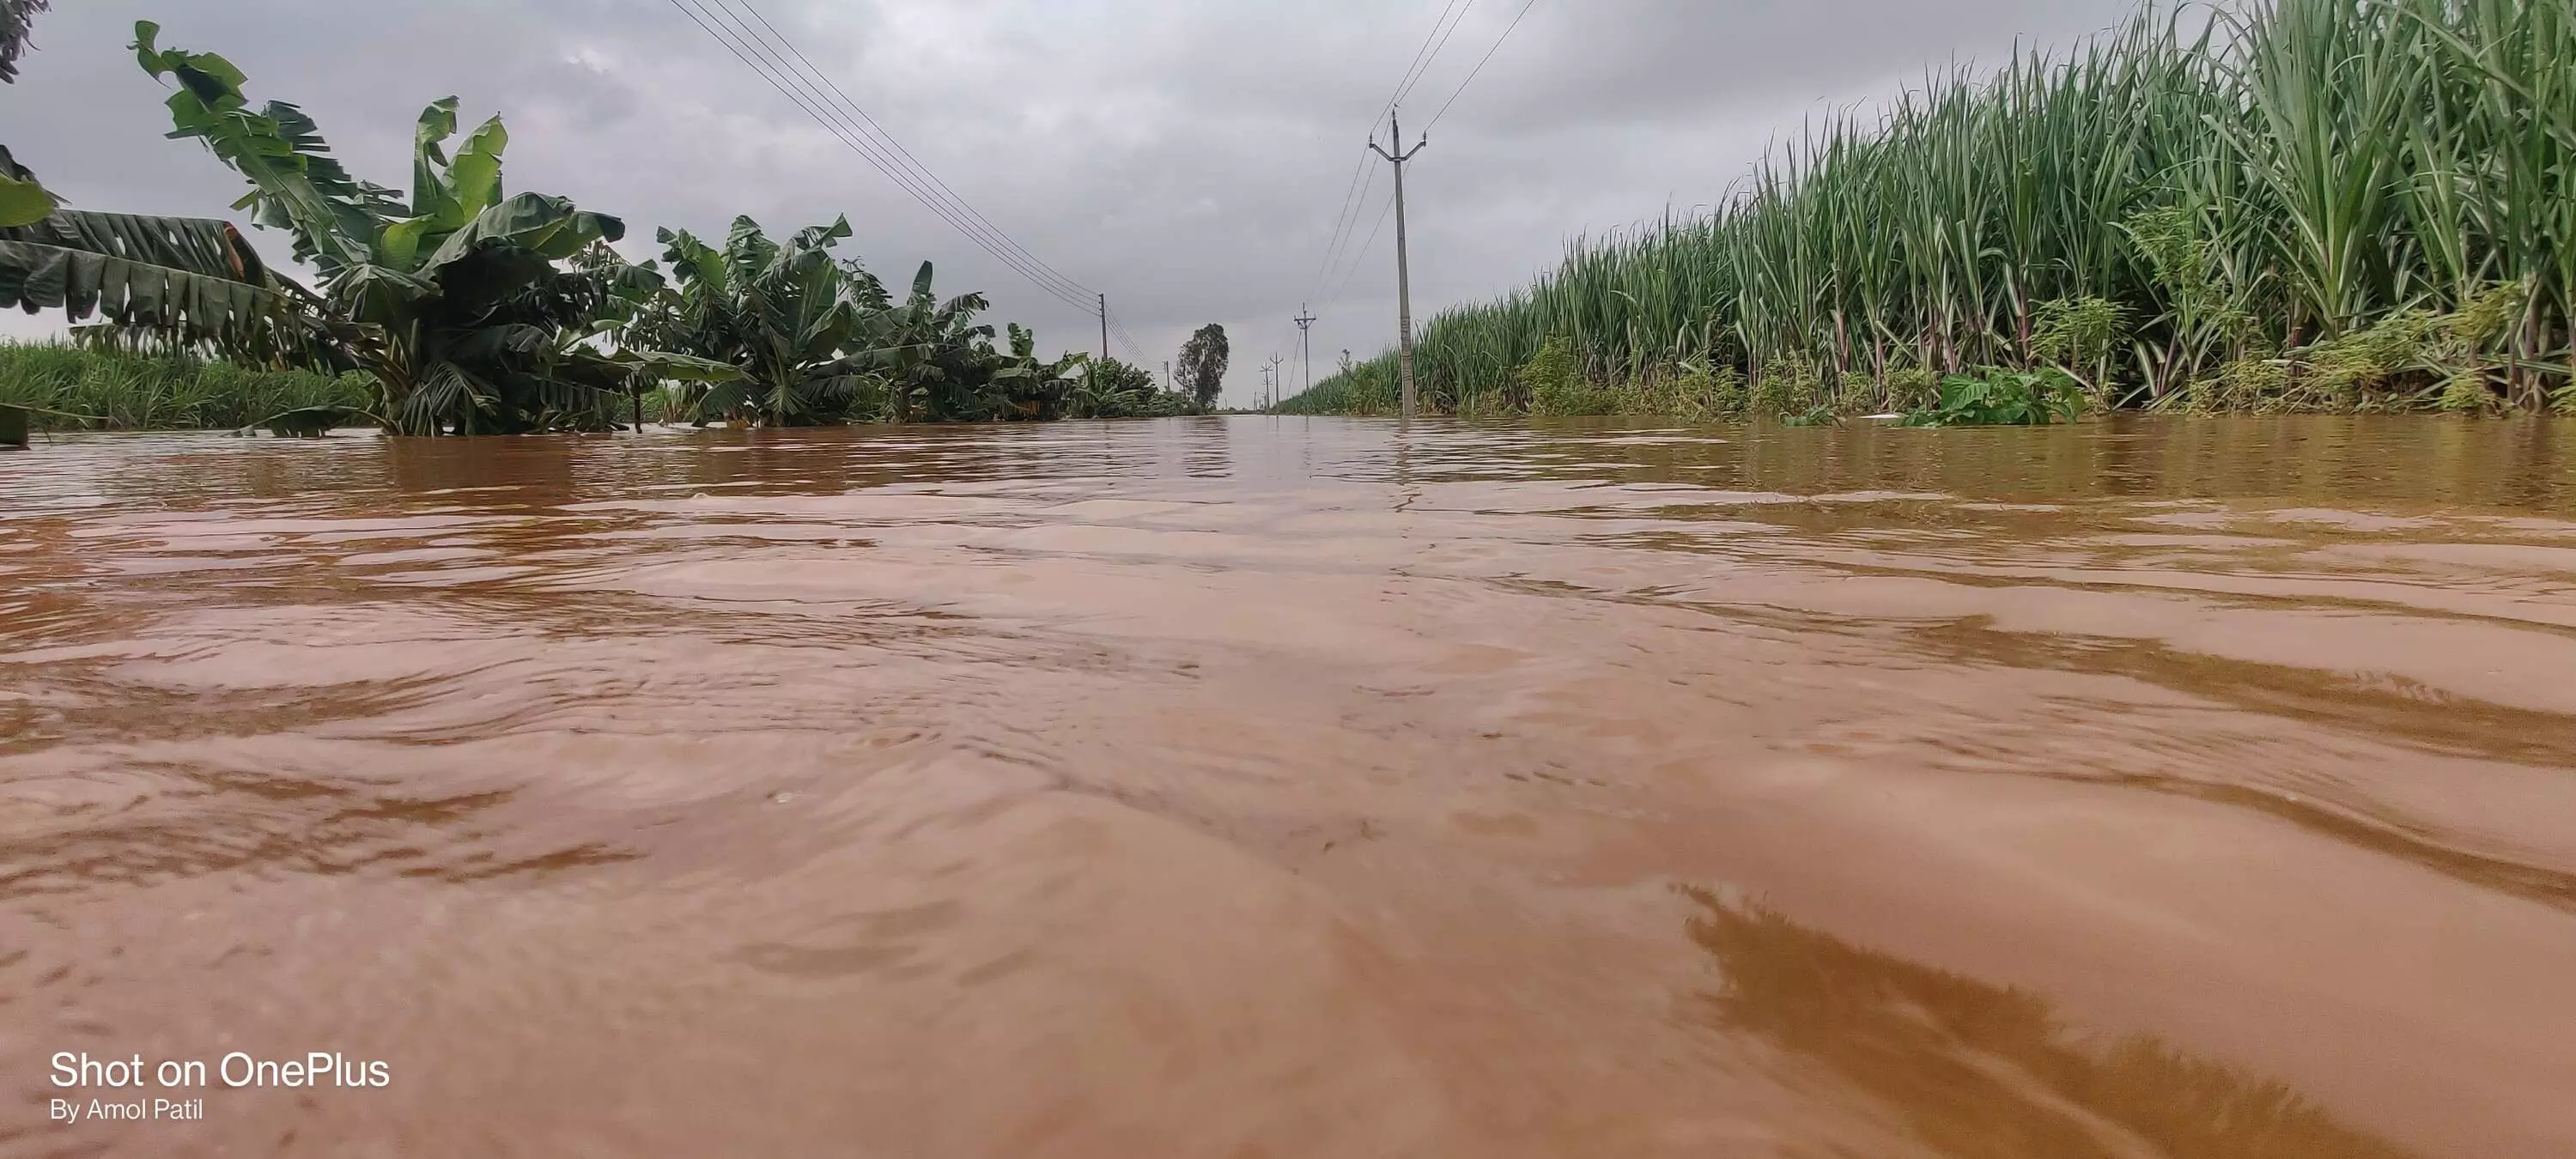 बाढ़ और मौसमी तबाही: 2020-21 में कर्नाटक और महाराष्ट्र में हुआ था फसलों को सबसे ज्यादा नुकसान, इस साल भी कई राज्य चपेट में